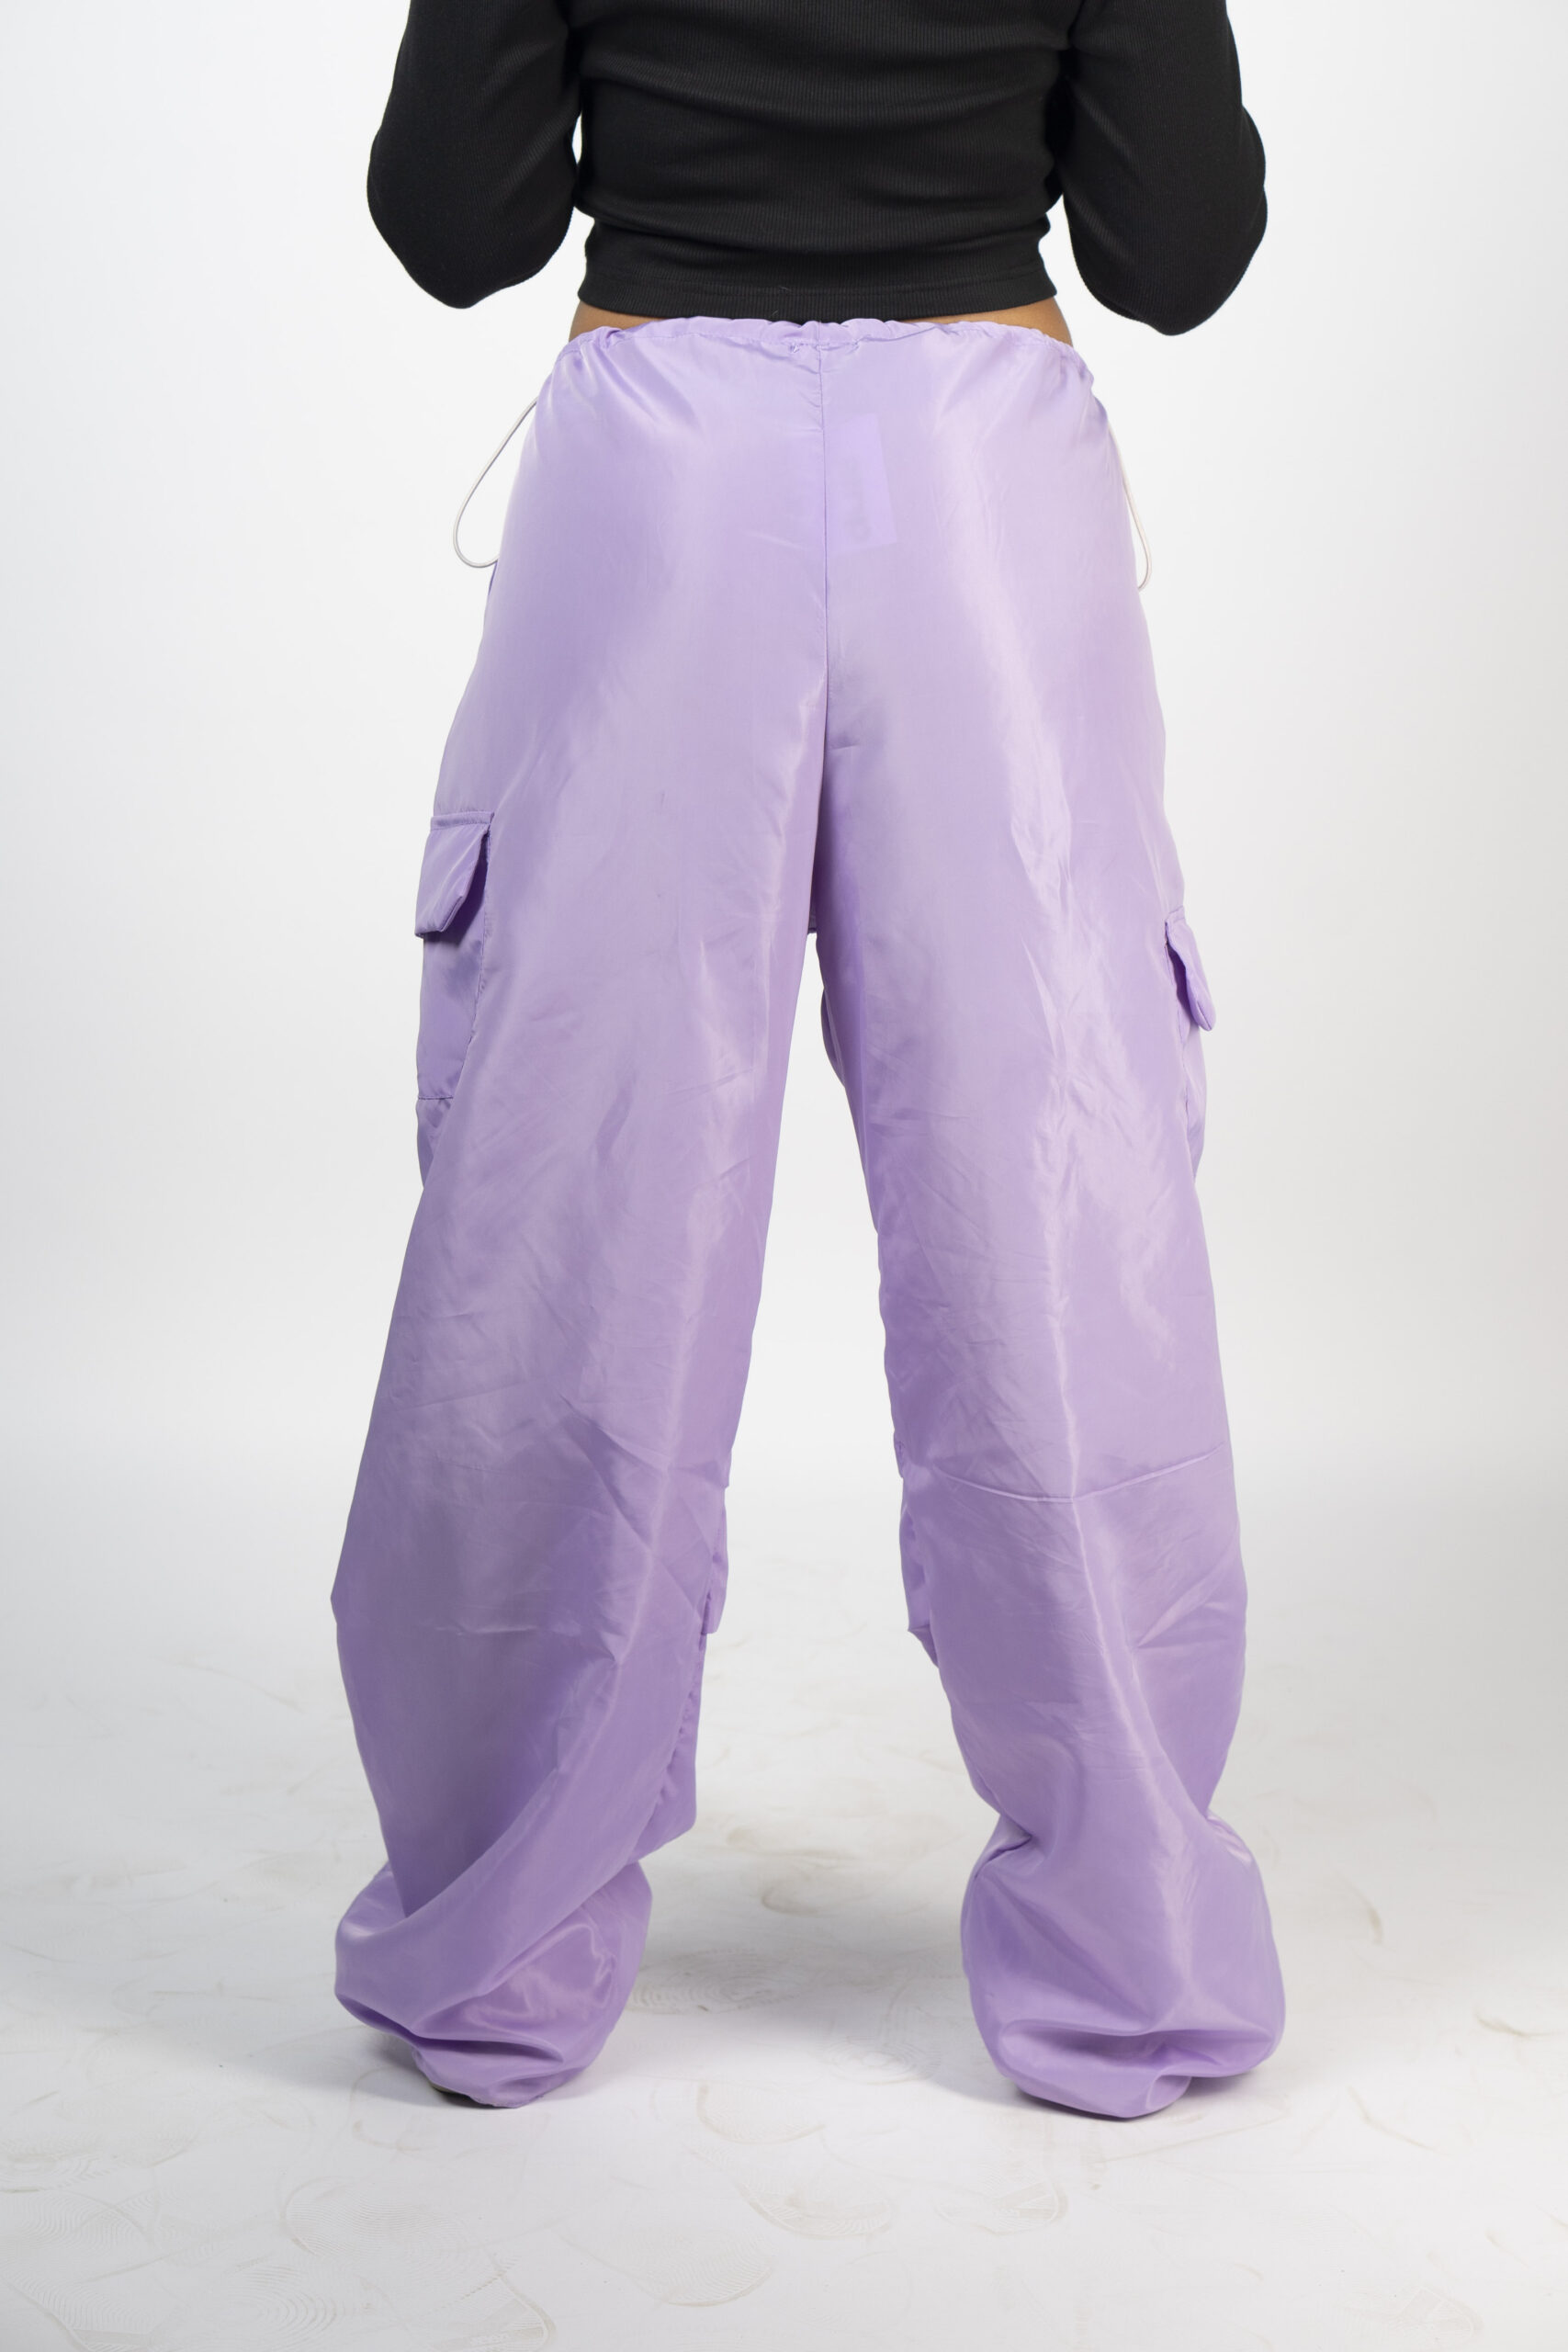 Lavender Parachute Pants – Dual